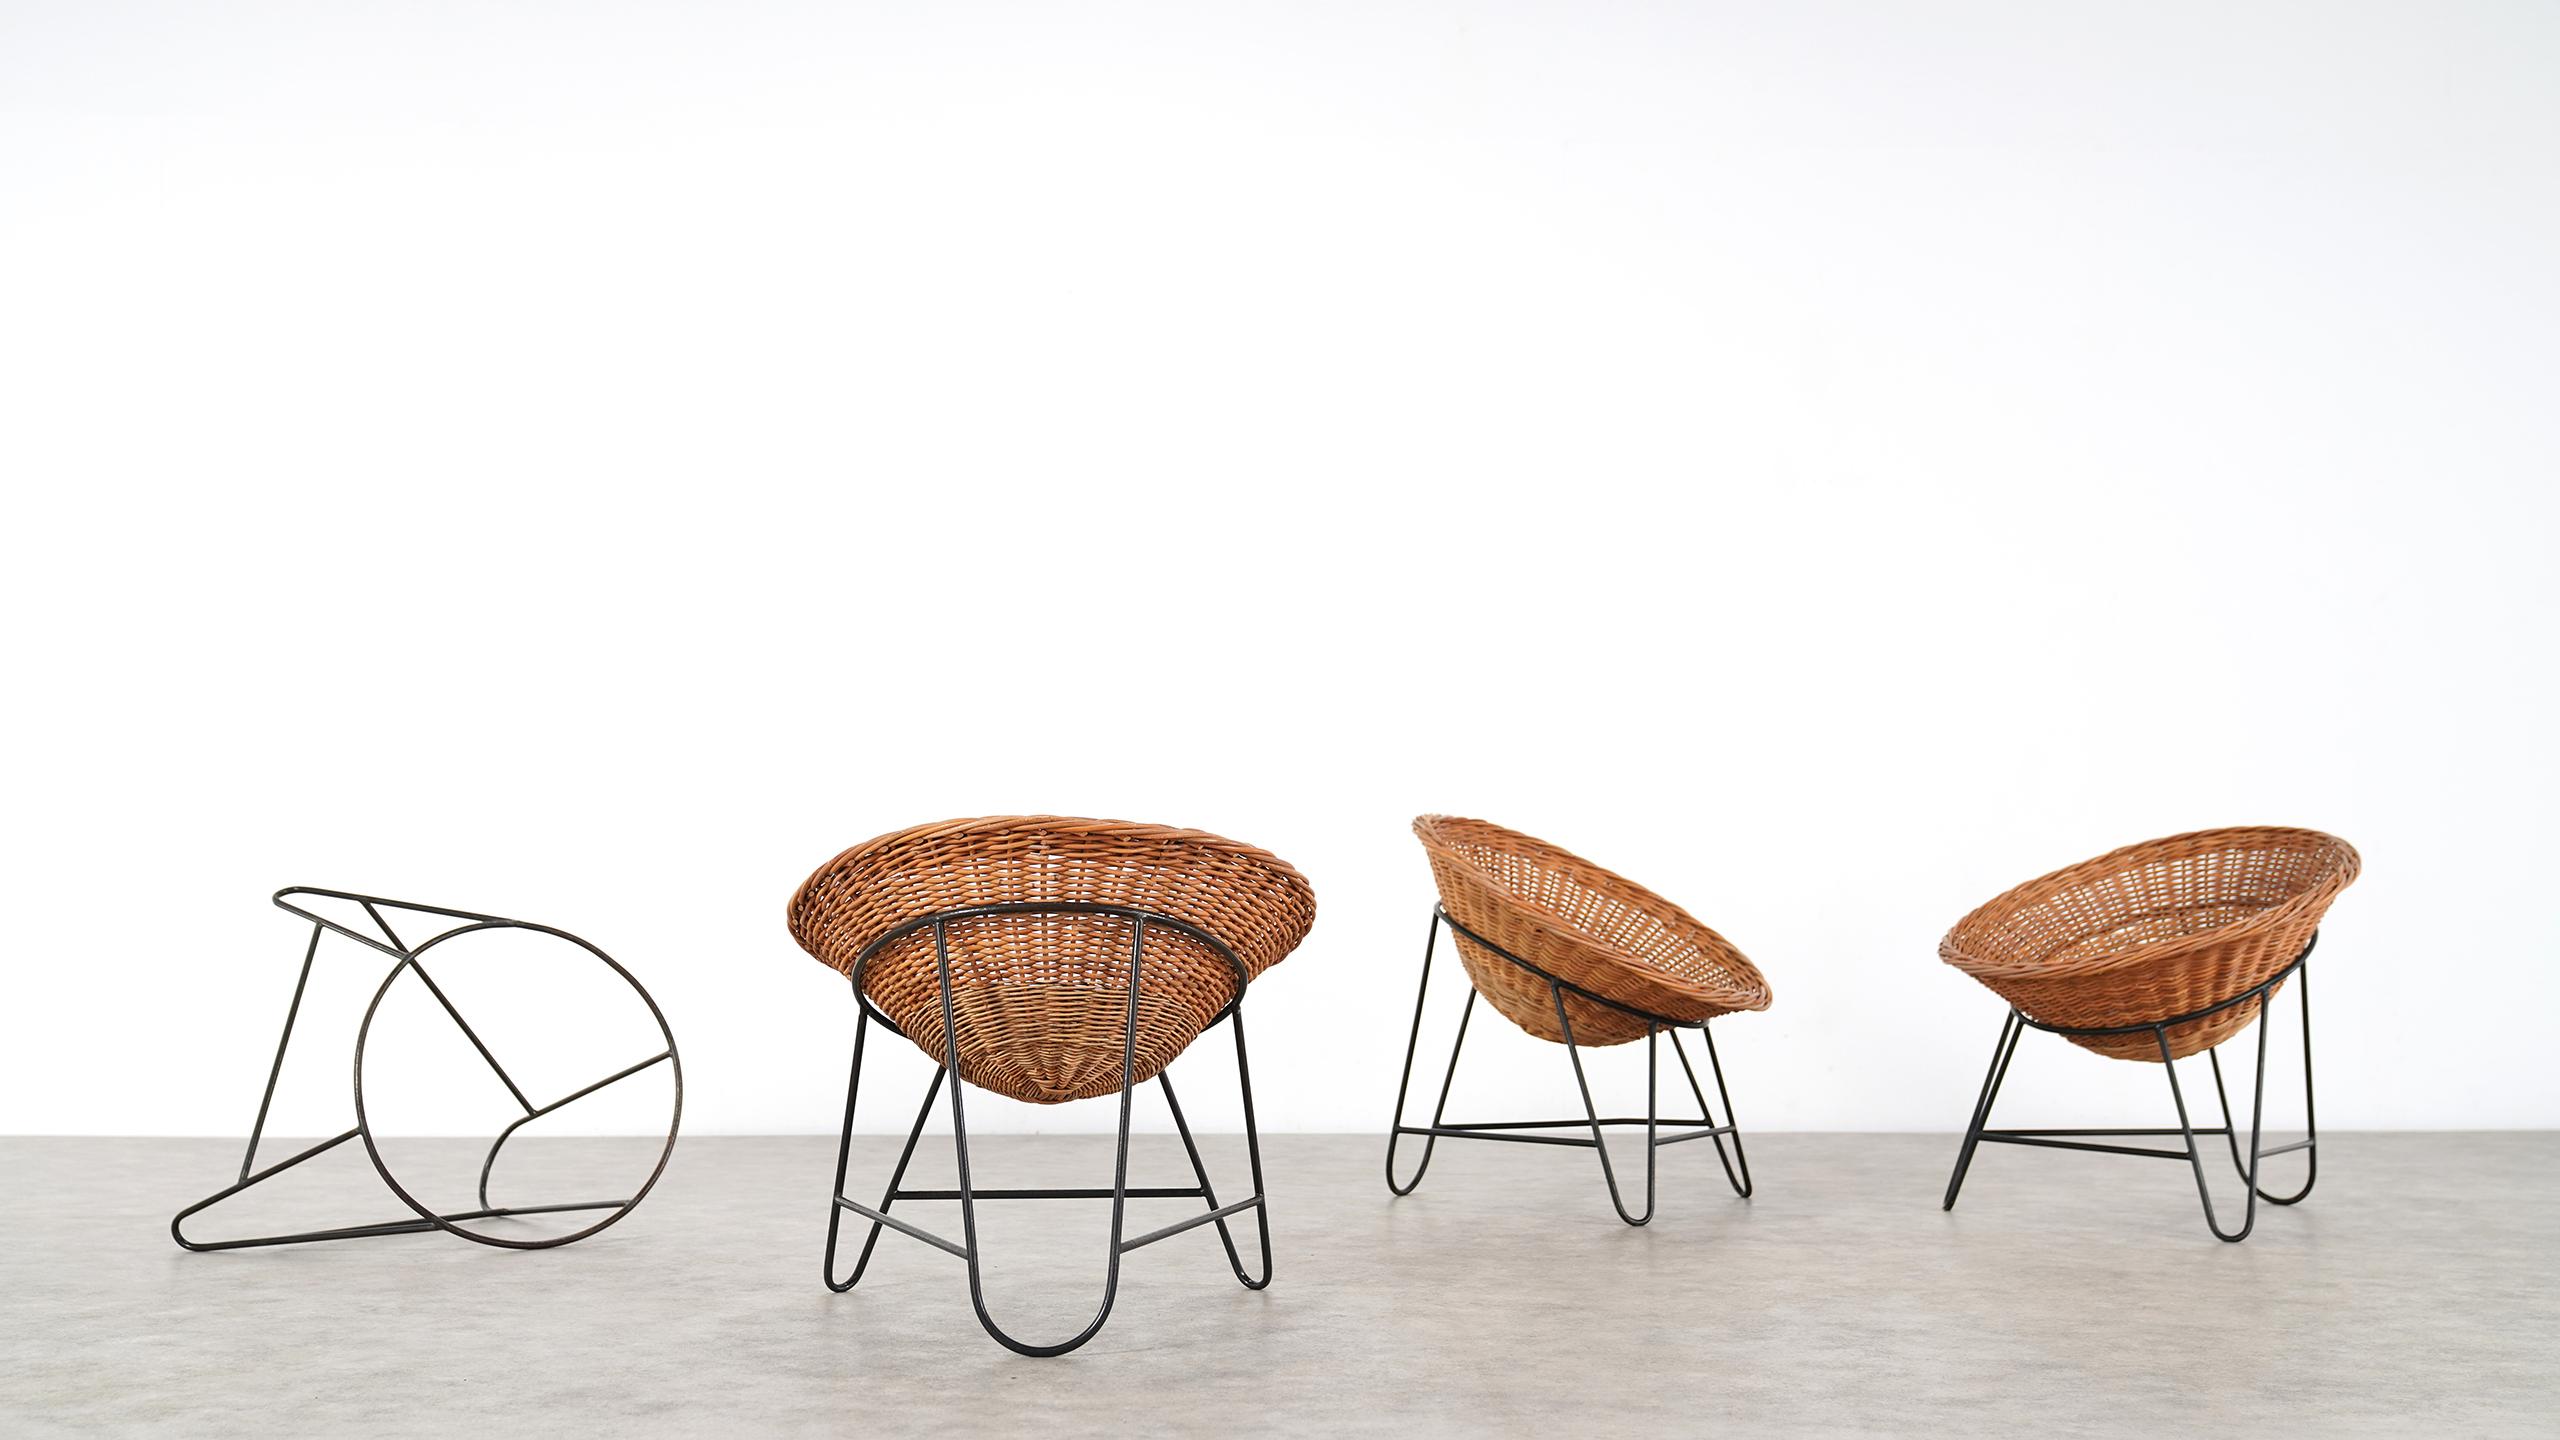 4 Modernist Wicker Chair in style of Mathieu Matégot circa 1950, France Tripod 3